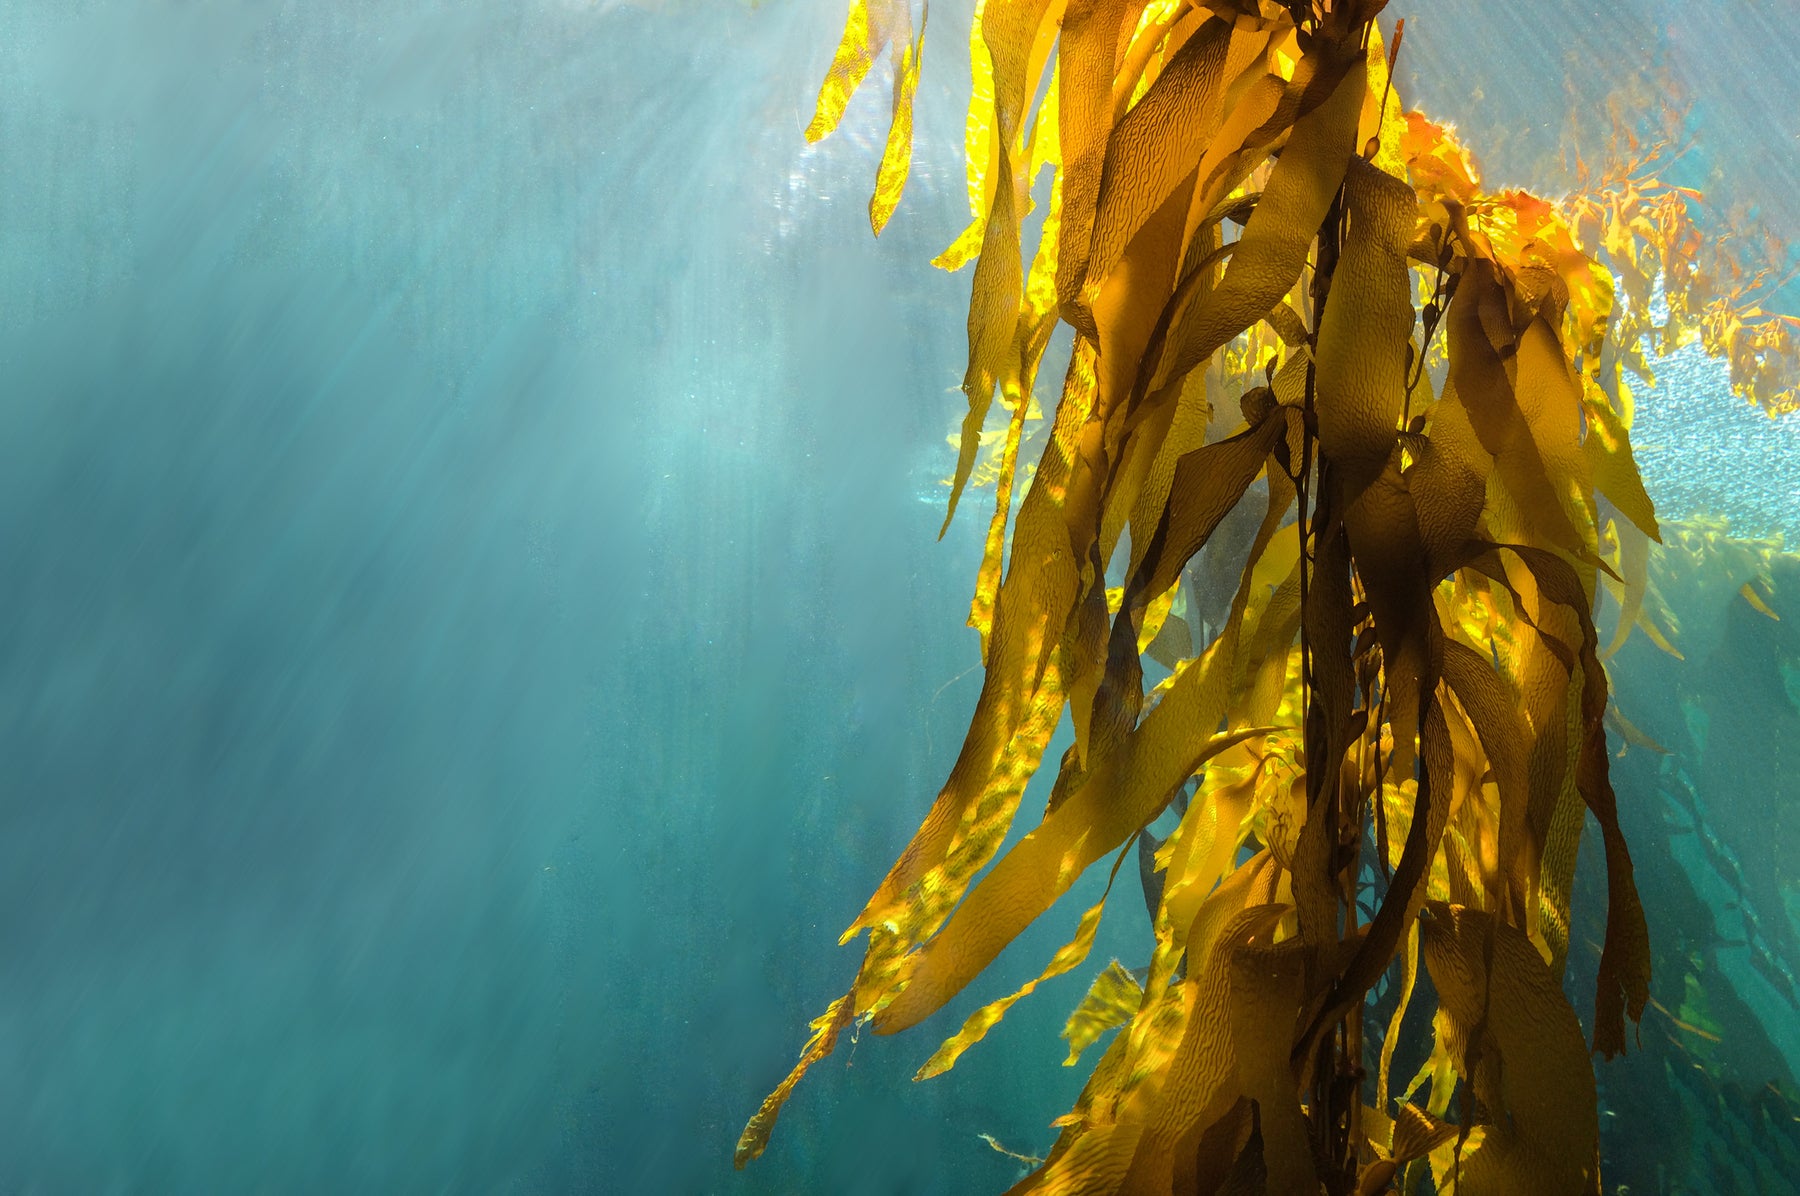 Sea Kelp